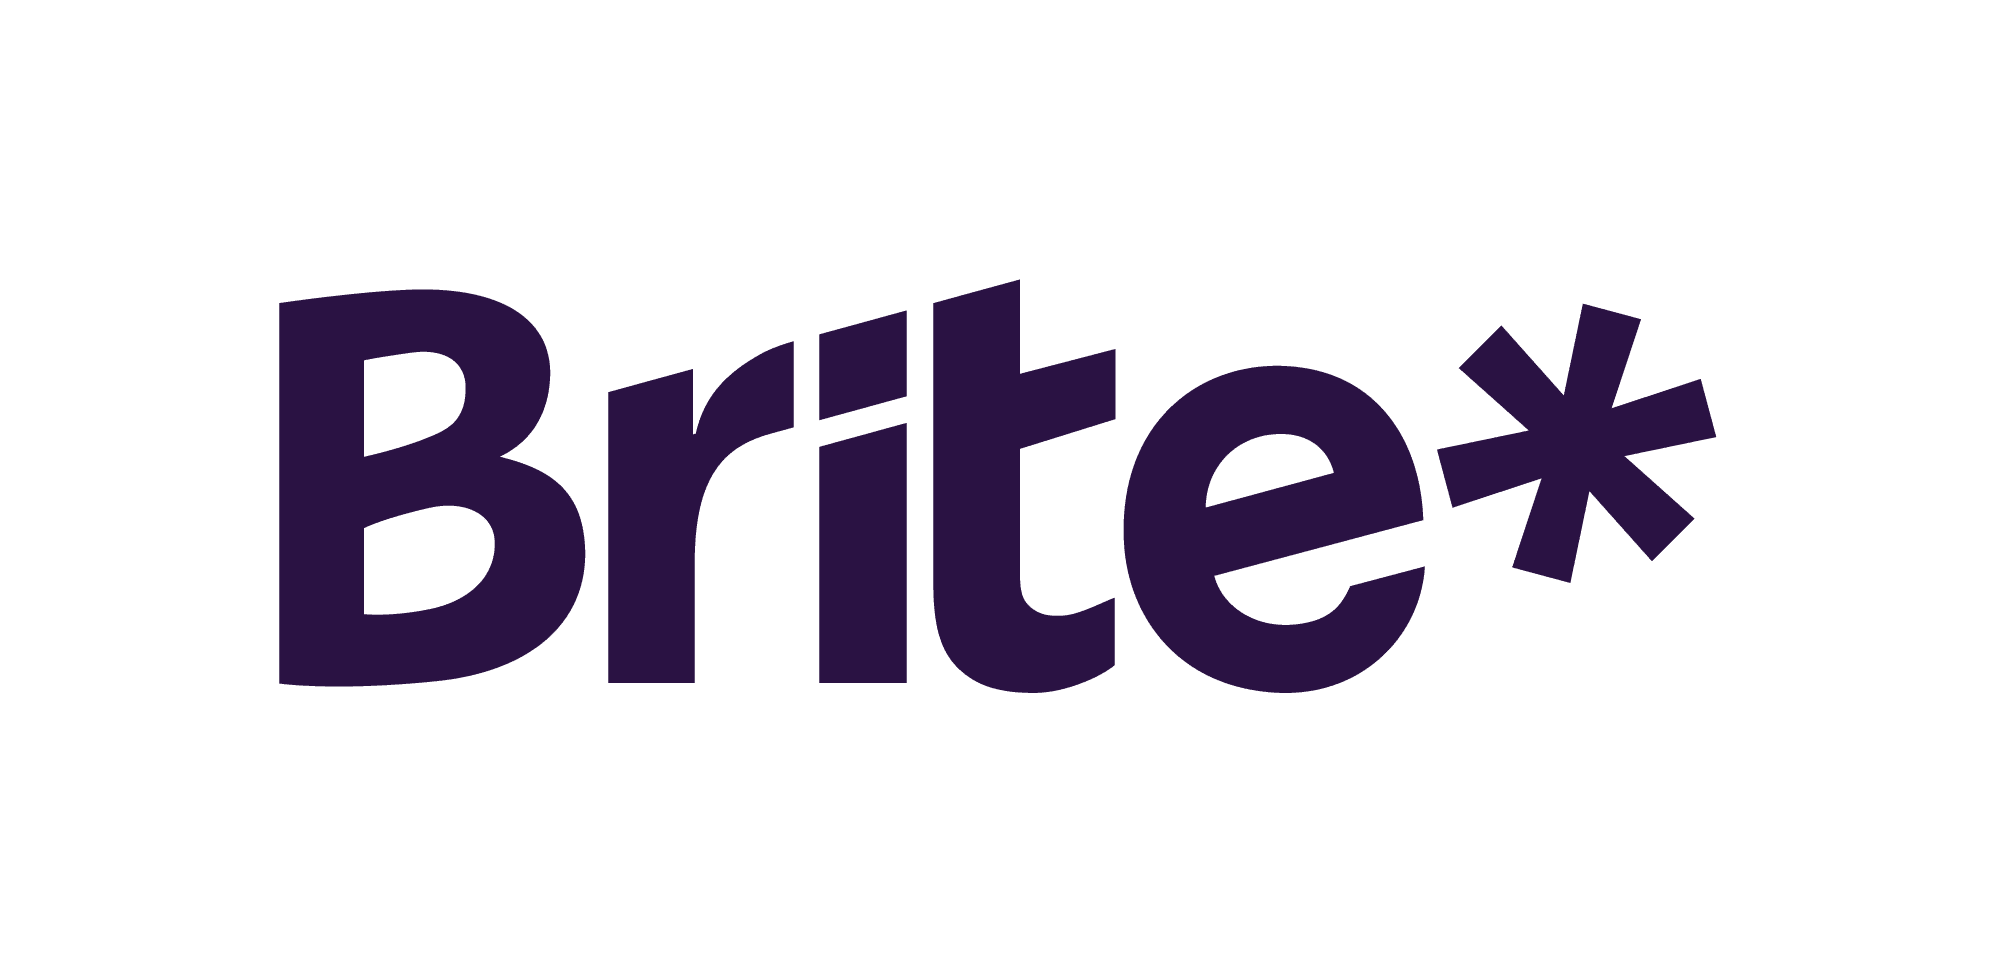 10 শীর্ষ-রেটেড অনলাইন ক্যাসিনো গ্রহণ করছে Brite